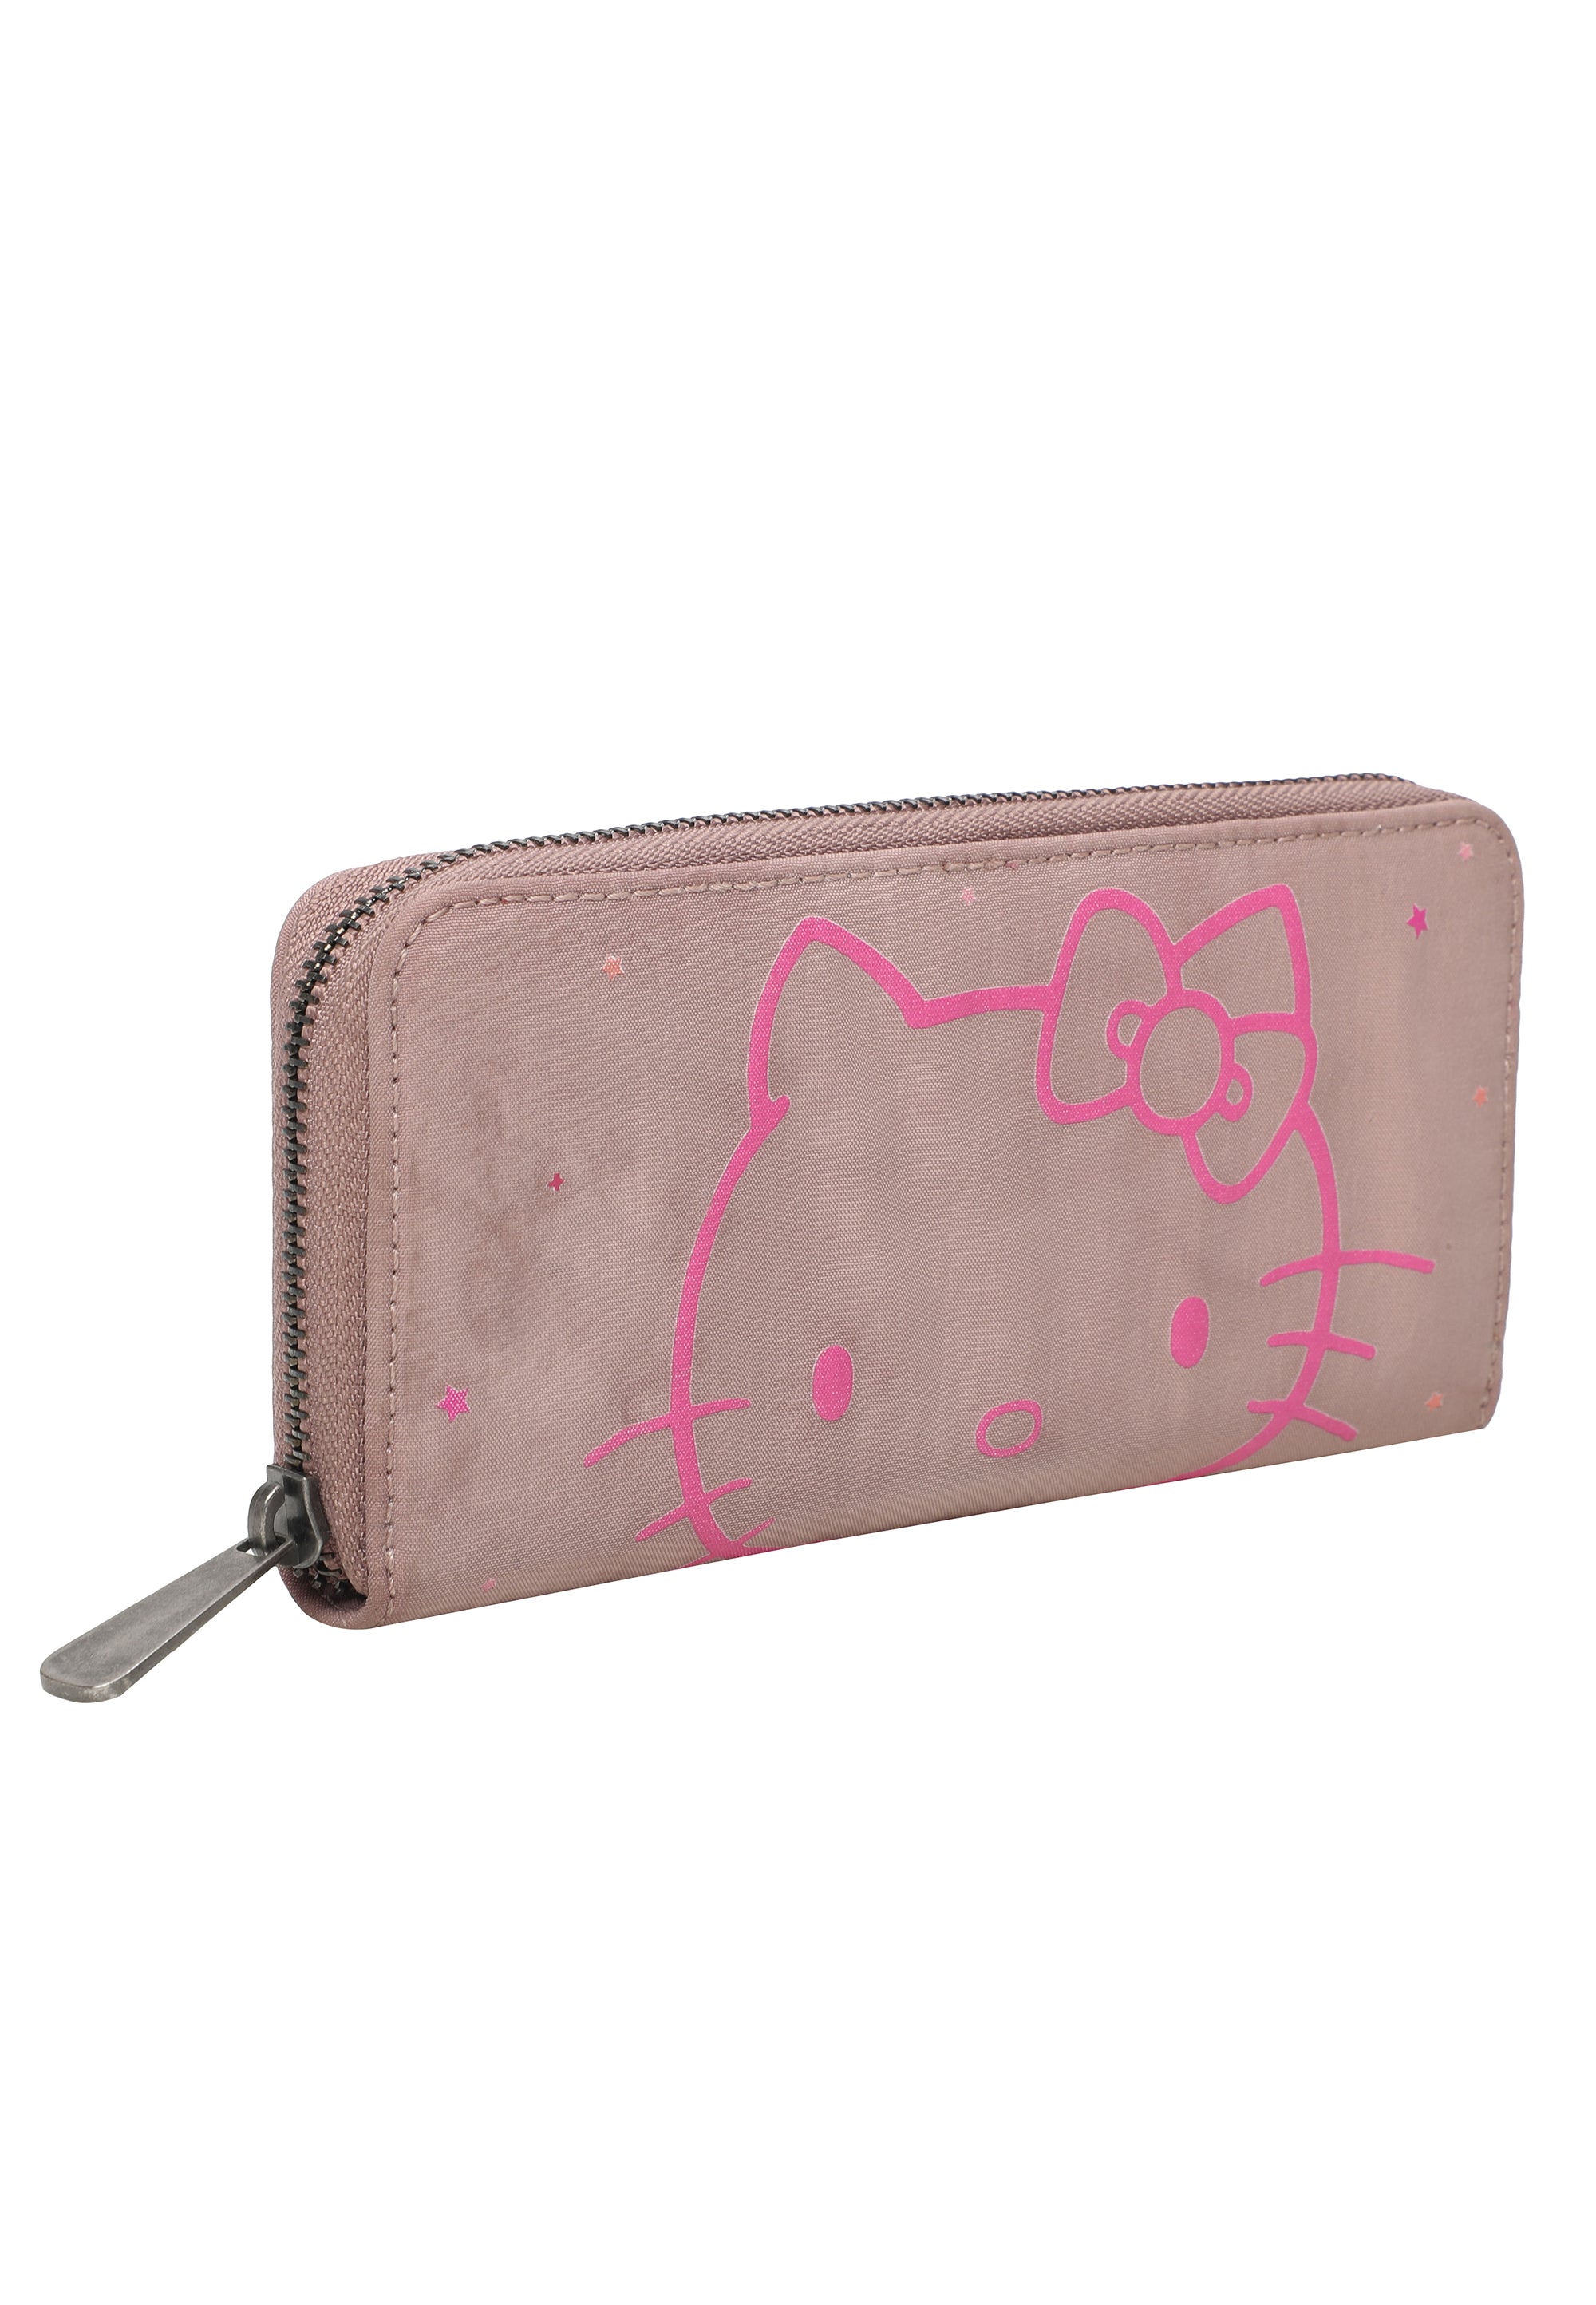 Hello Kitty fritzi Wallet Nicole Sky